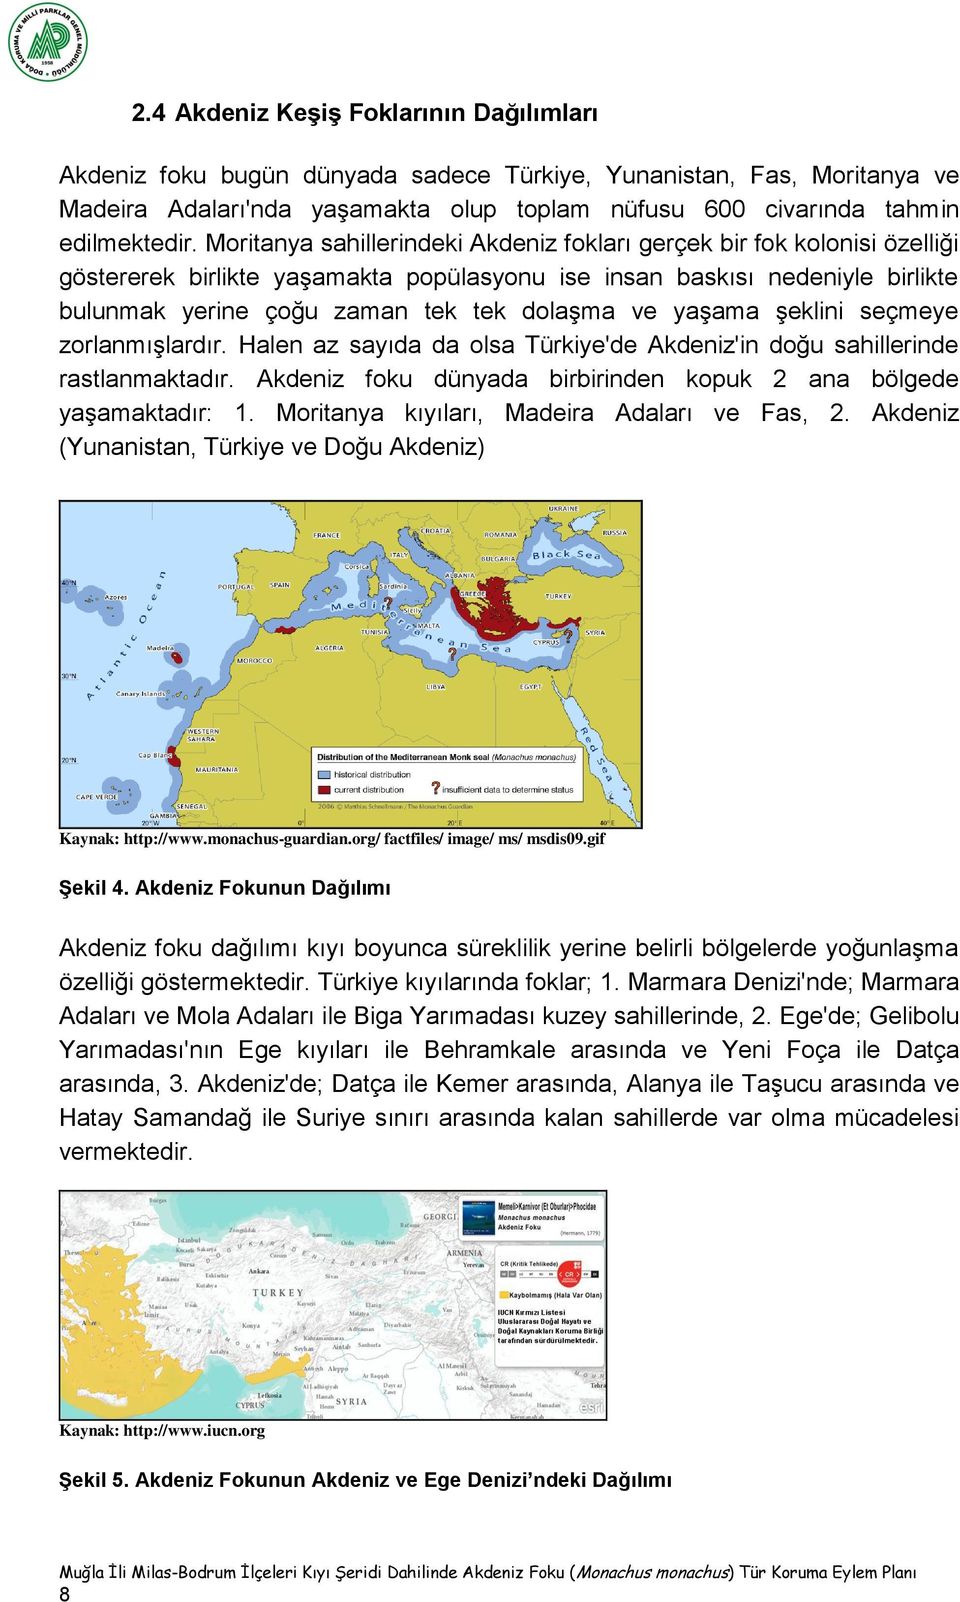 yaşama şeklini seçmeye zorlanmışlardır. Halen az sayıda da olsa Türkiye'de Akdeniz'in doğu sahillerinde rastlanmaktadır. Akdeniz foku dünyada birbirinden kopuk 2 ana bölgede yaşamaktadır: 1.